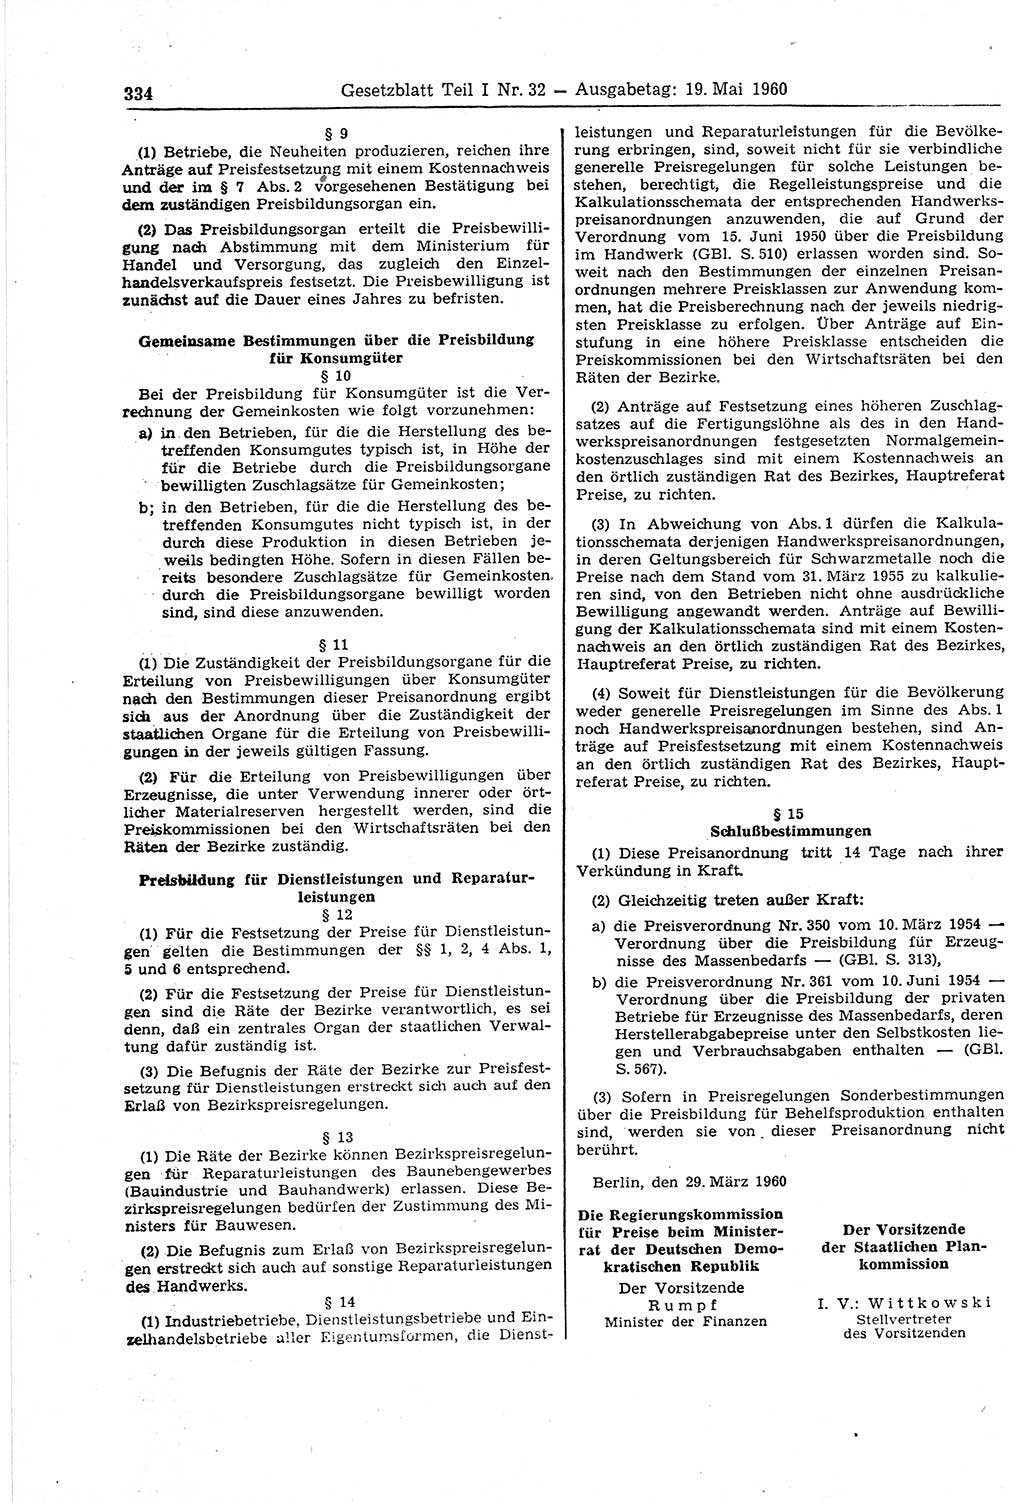 Gesetzblatt (GBl.) der Deutschen Demokratischen Republik (DDR) Teil Ⅰ 1960, Seite 334 (GBl. DDR Ⅰ 1960, S. 334)